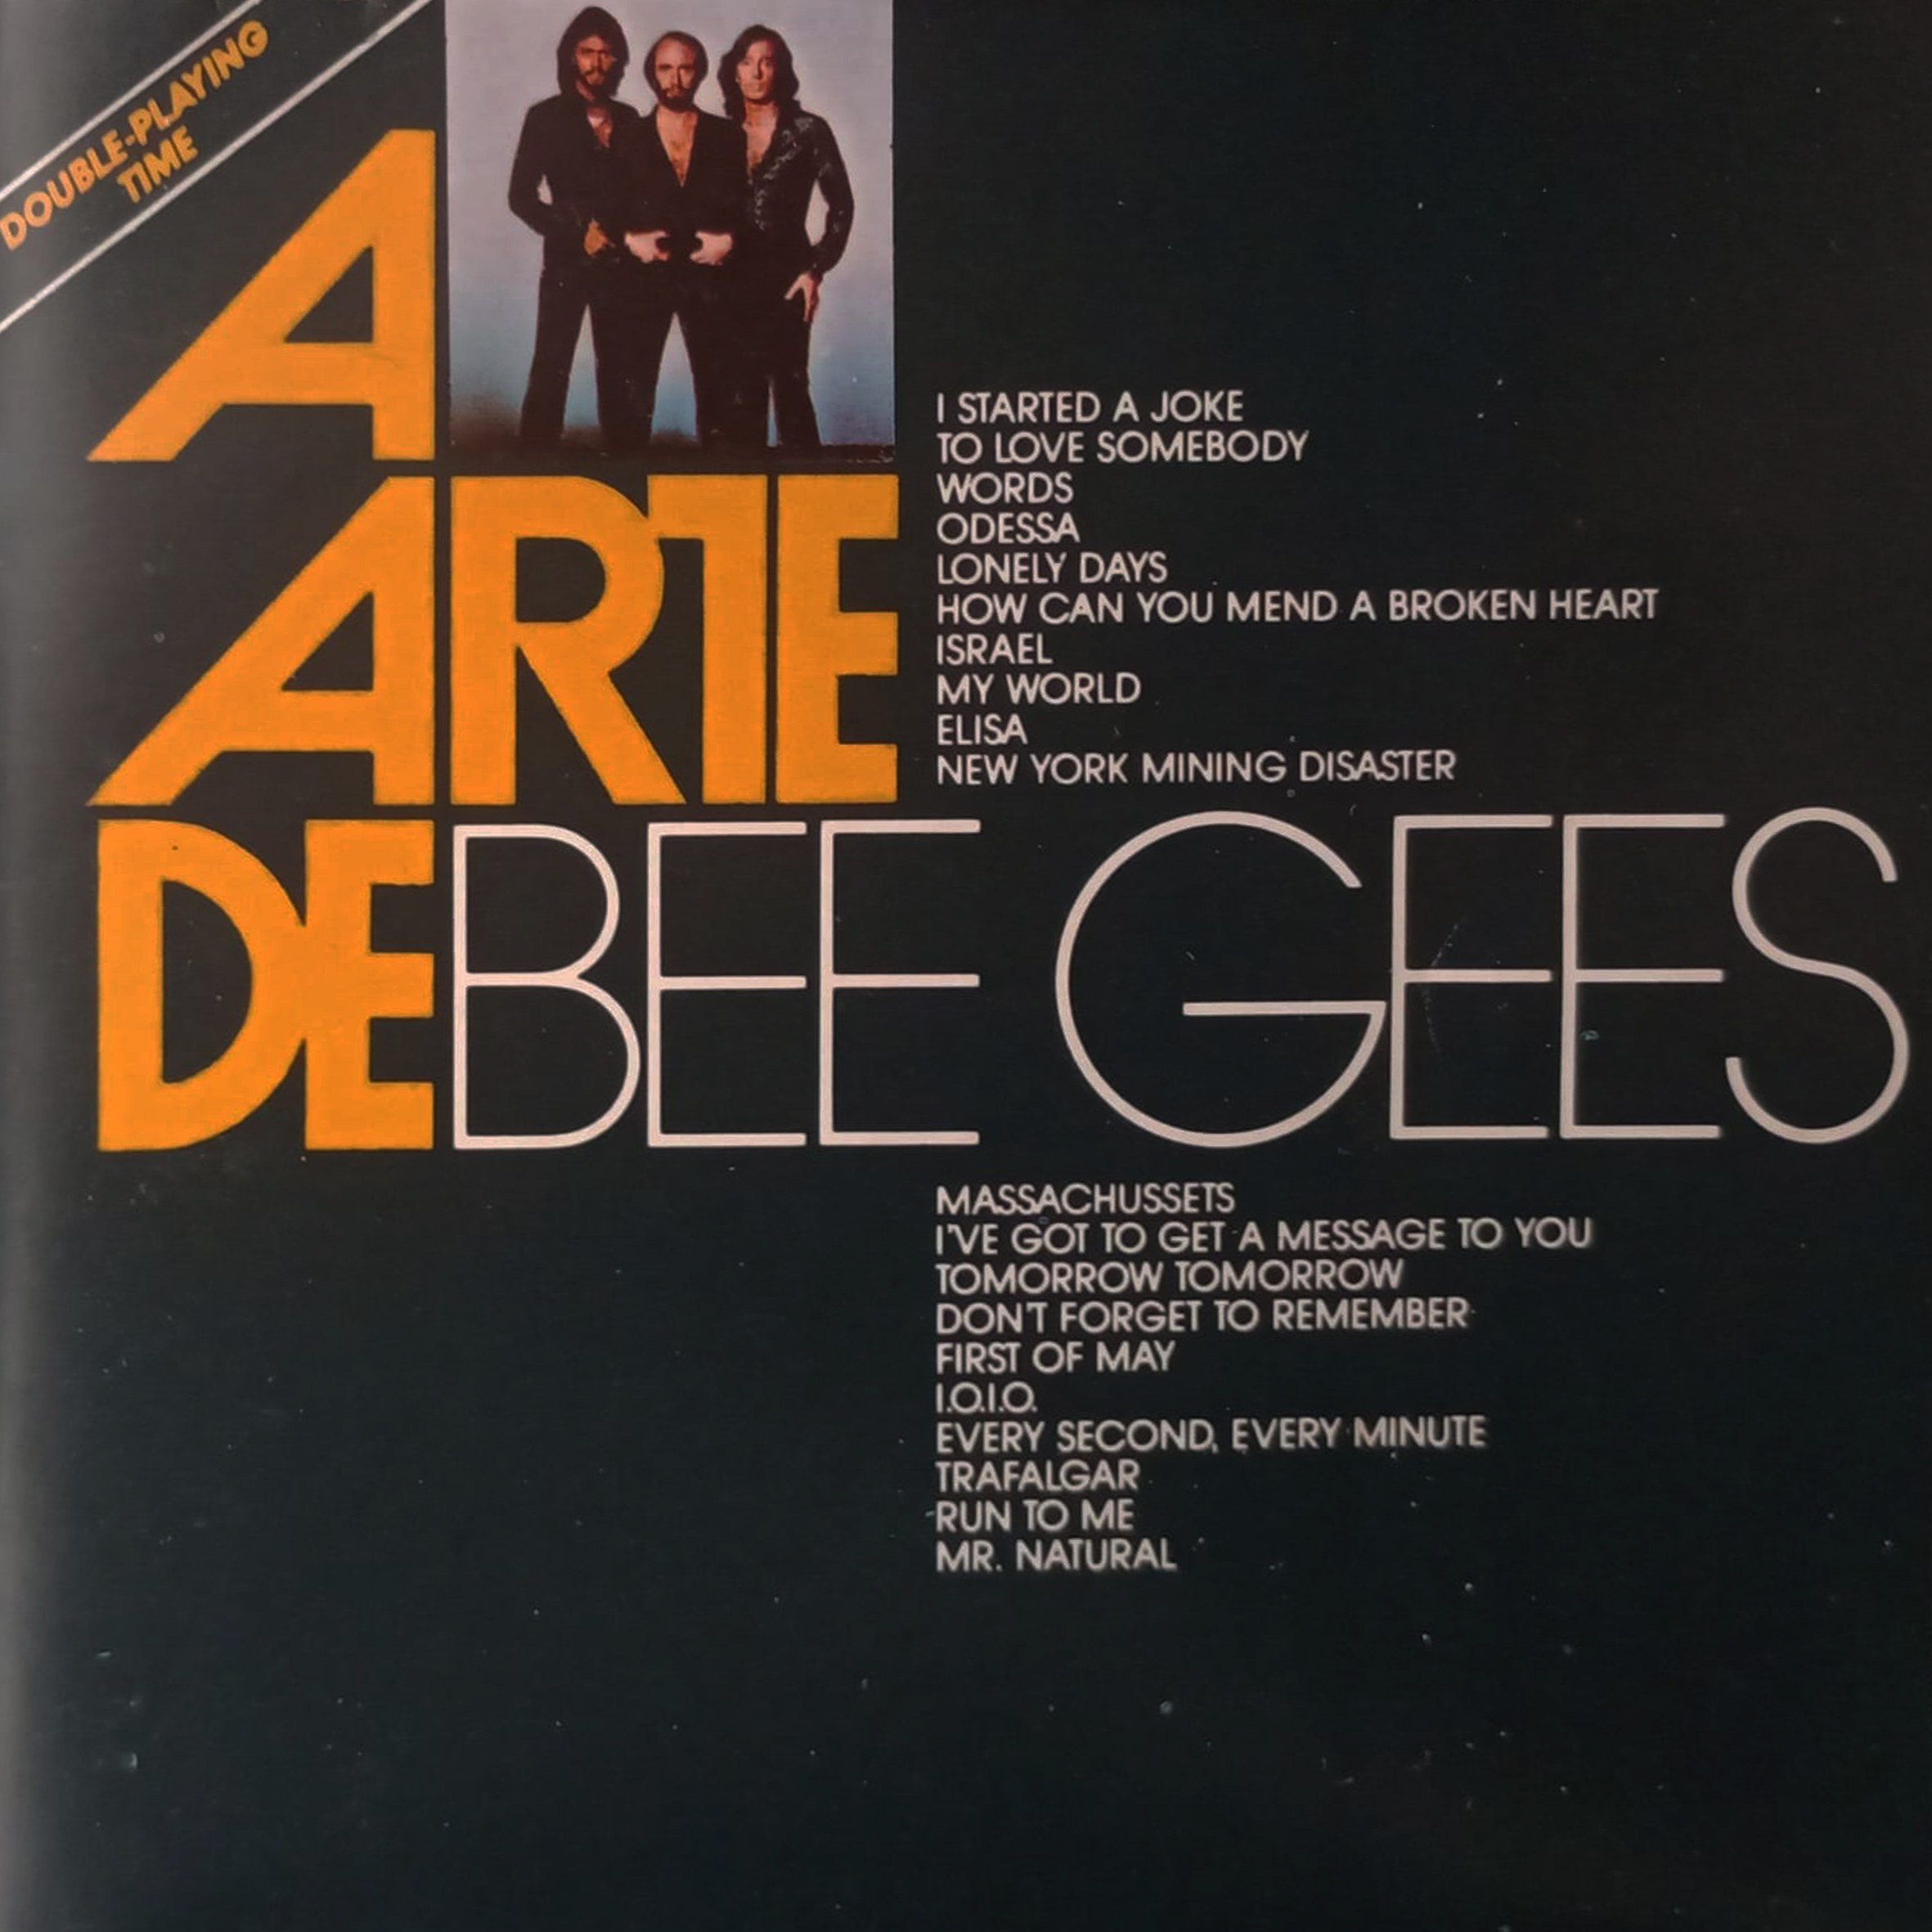 CD - Bee Gees - A Arte de